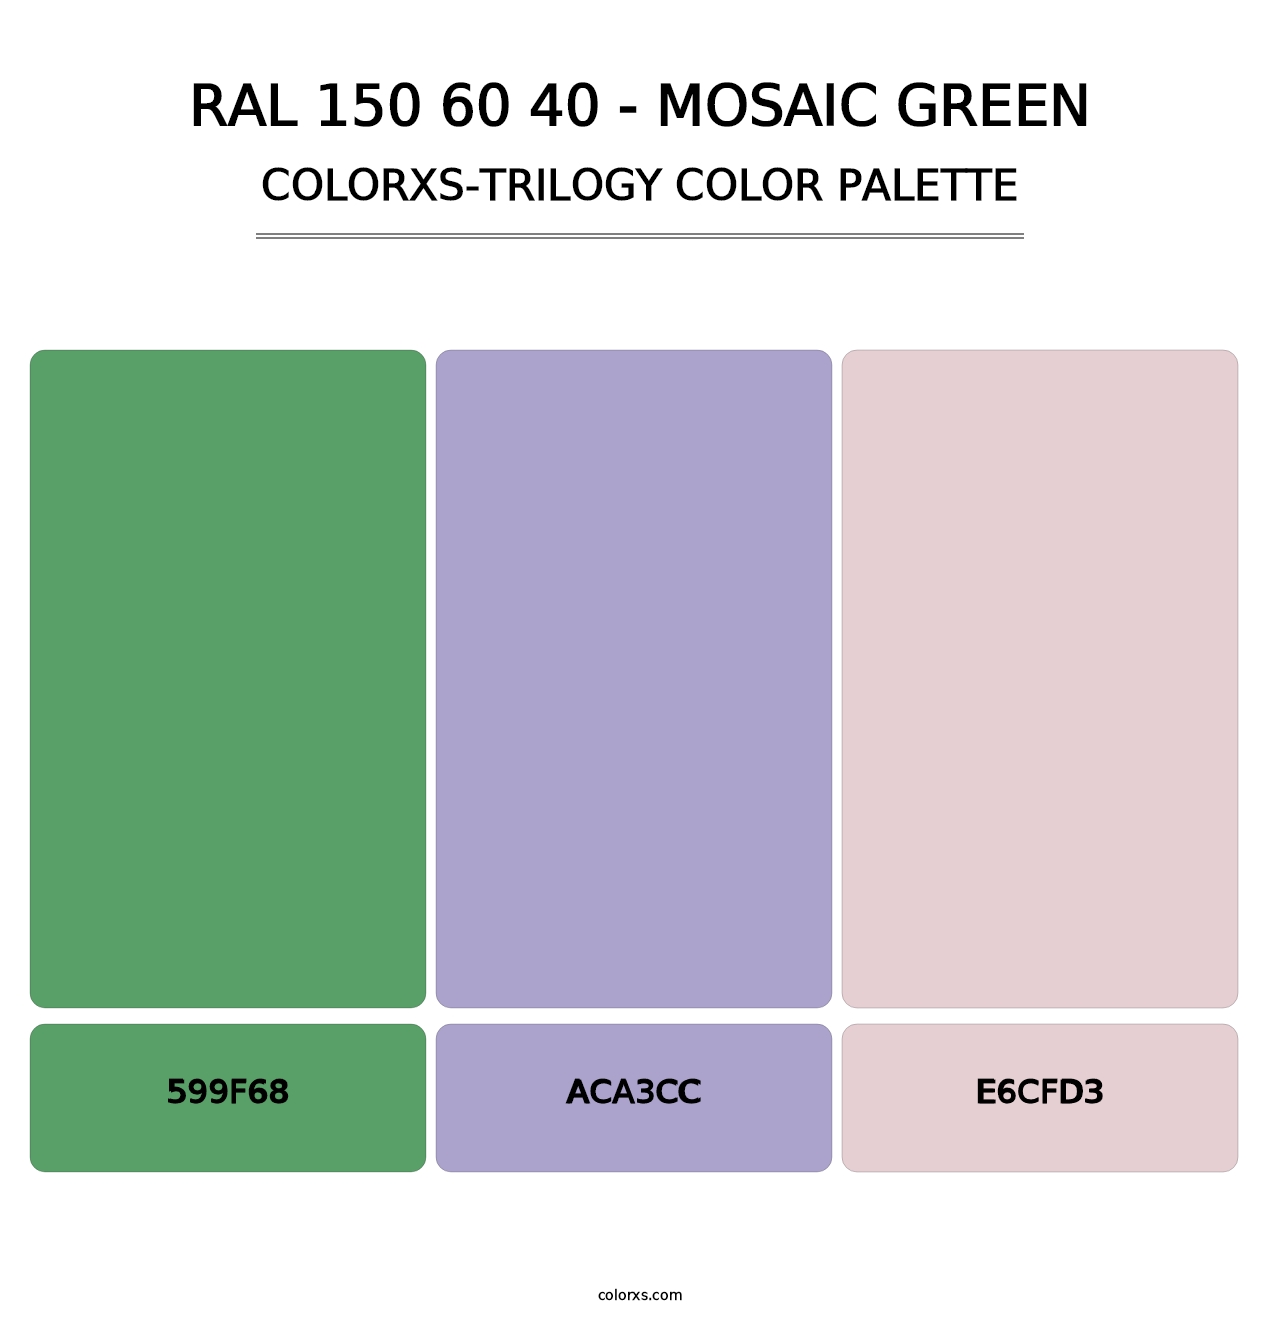 RAL 150 60 40 - Mosaic Green - Colorxs Trilogy Palette